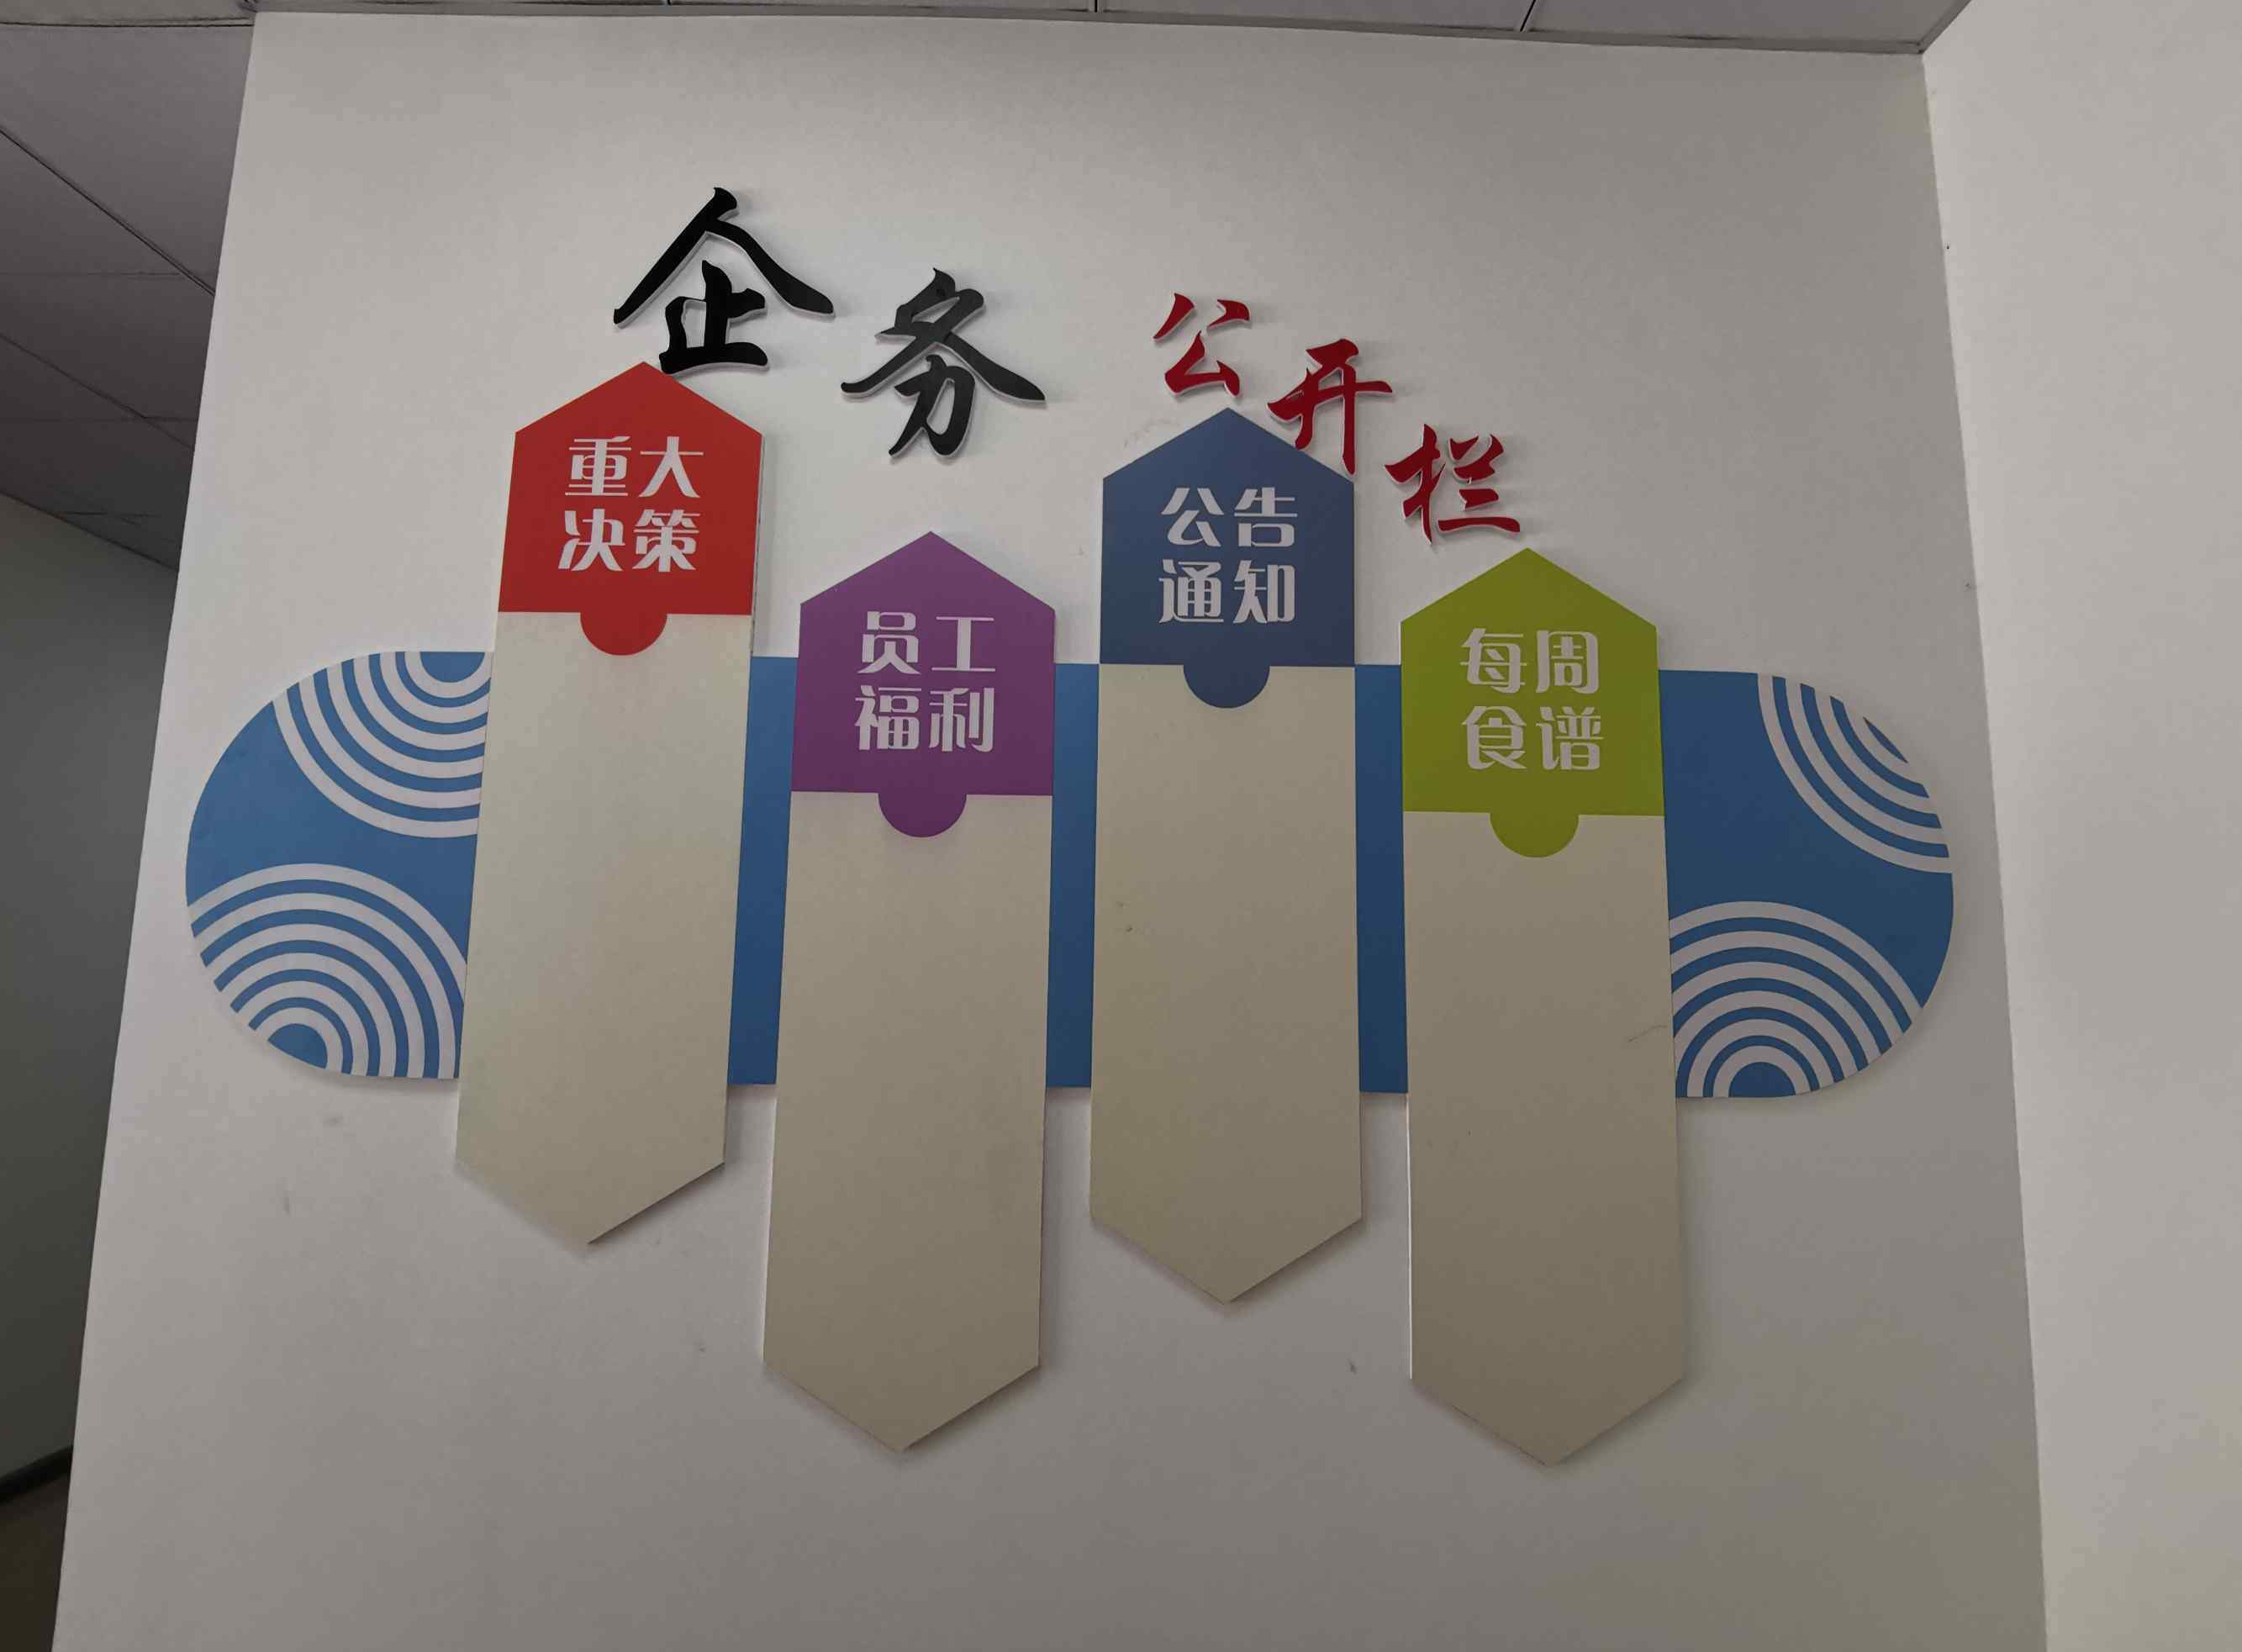 广汕铁路 “中铁十一局集团广汕铁路GSSG6标项目经理部”这是我最新的简历